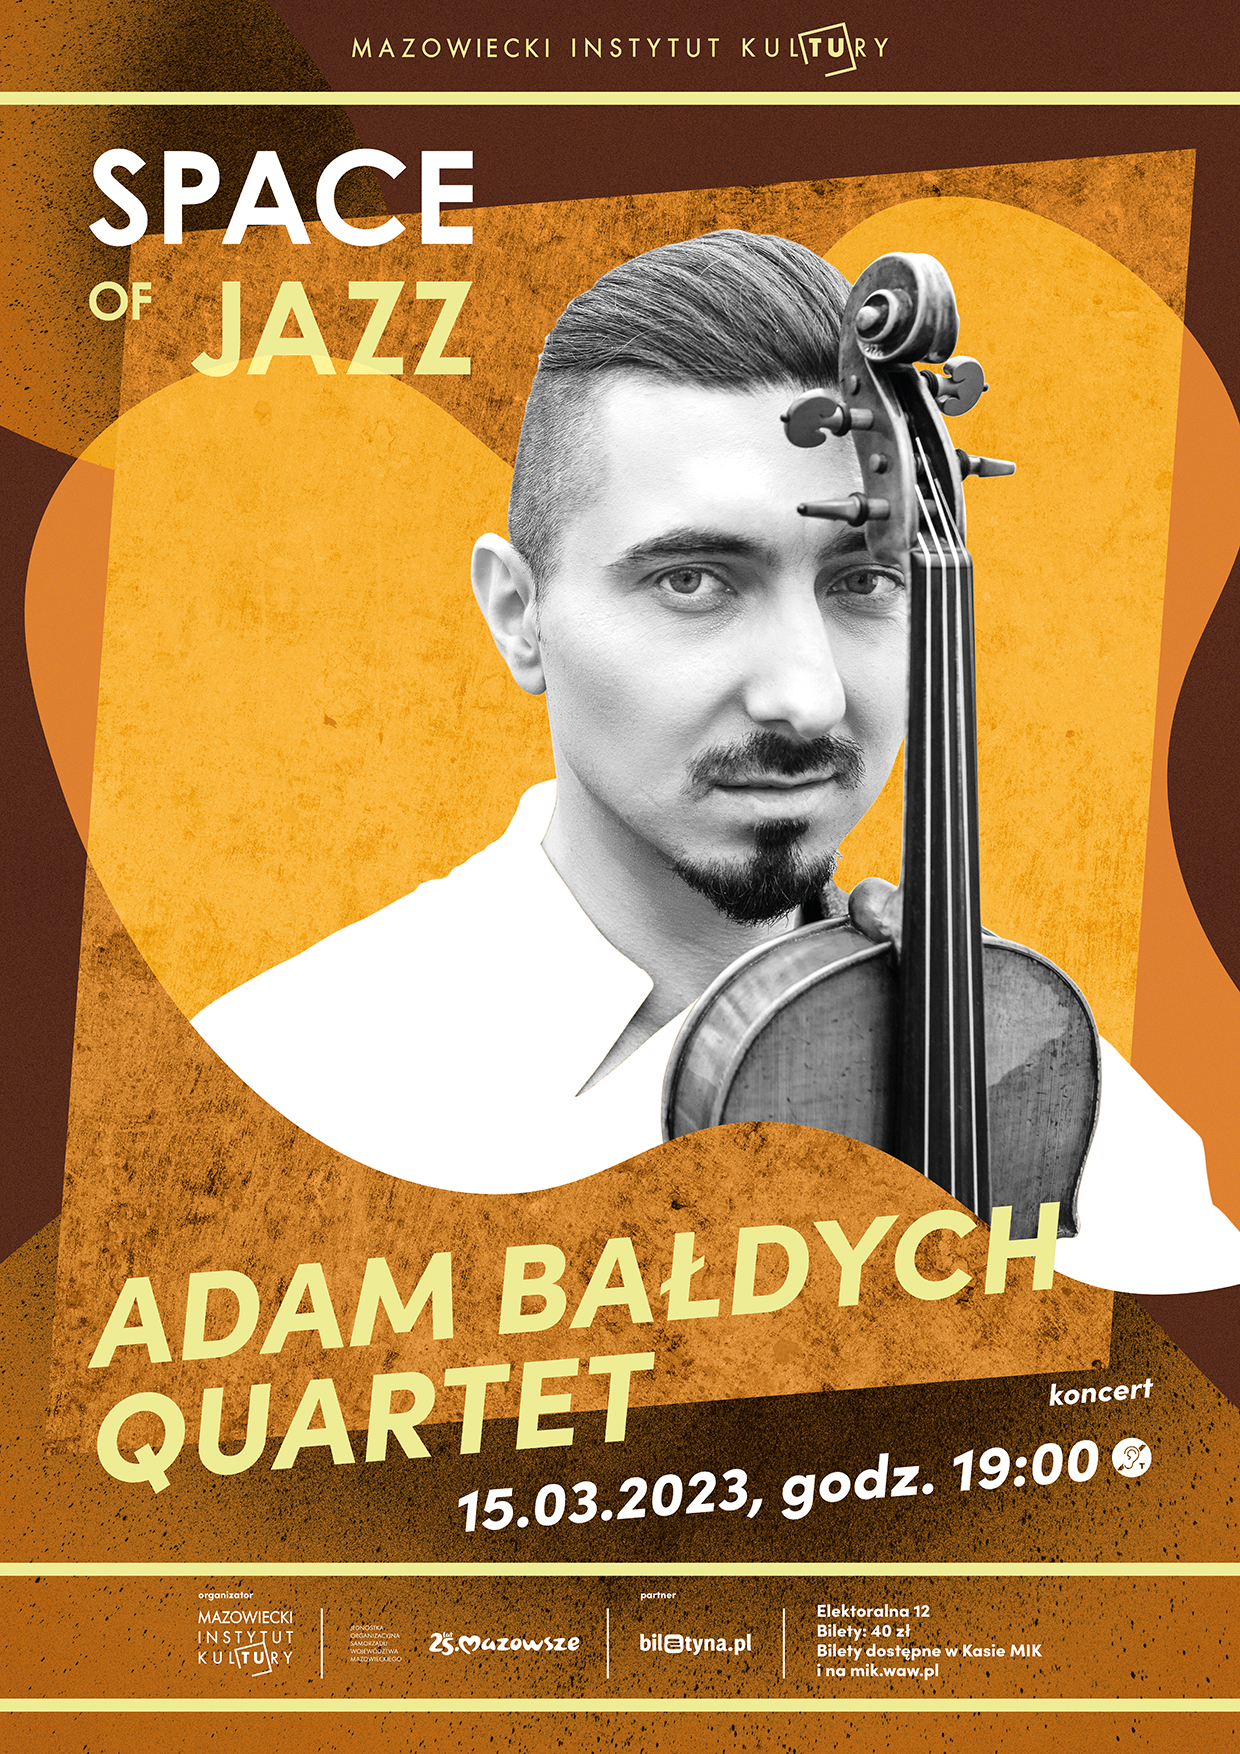 plakat reklamujący koncert zespołu Adam Bałdych Quartet w ramach cyklu Space of Jazz